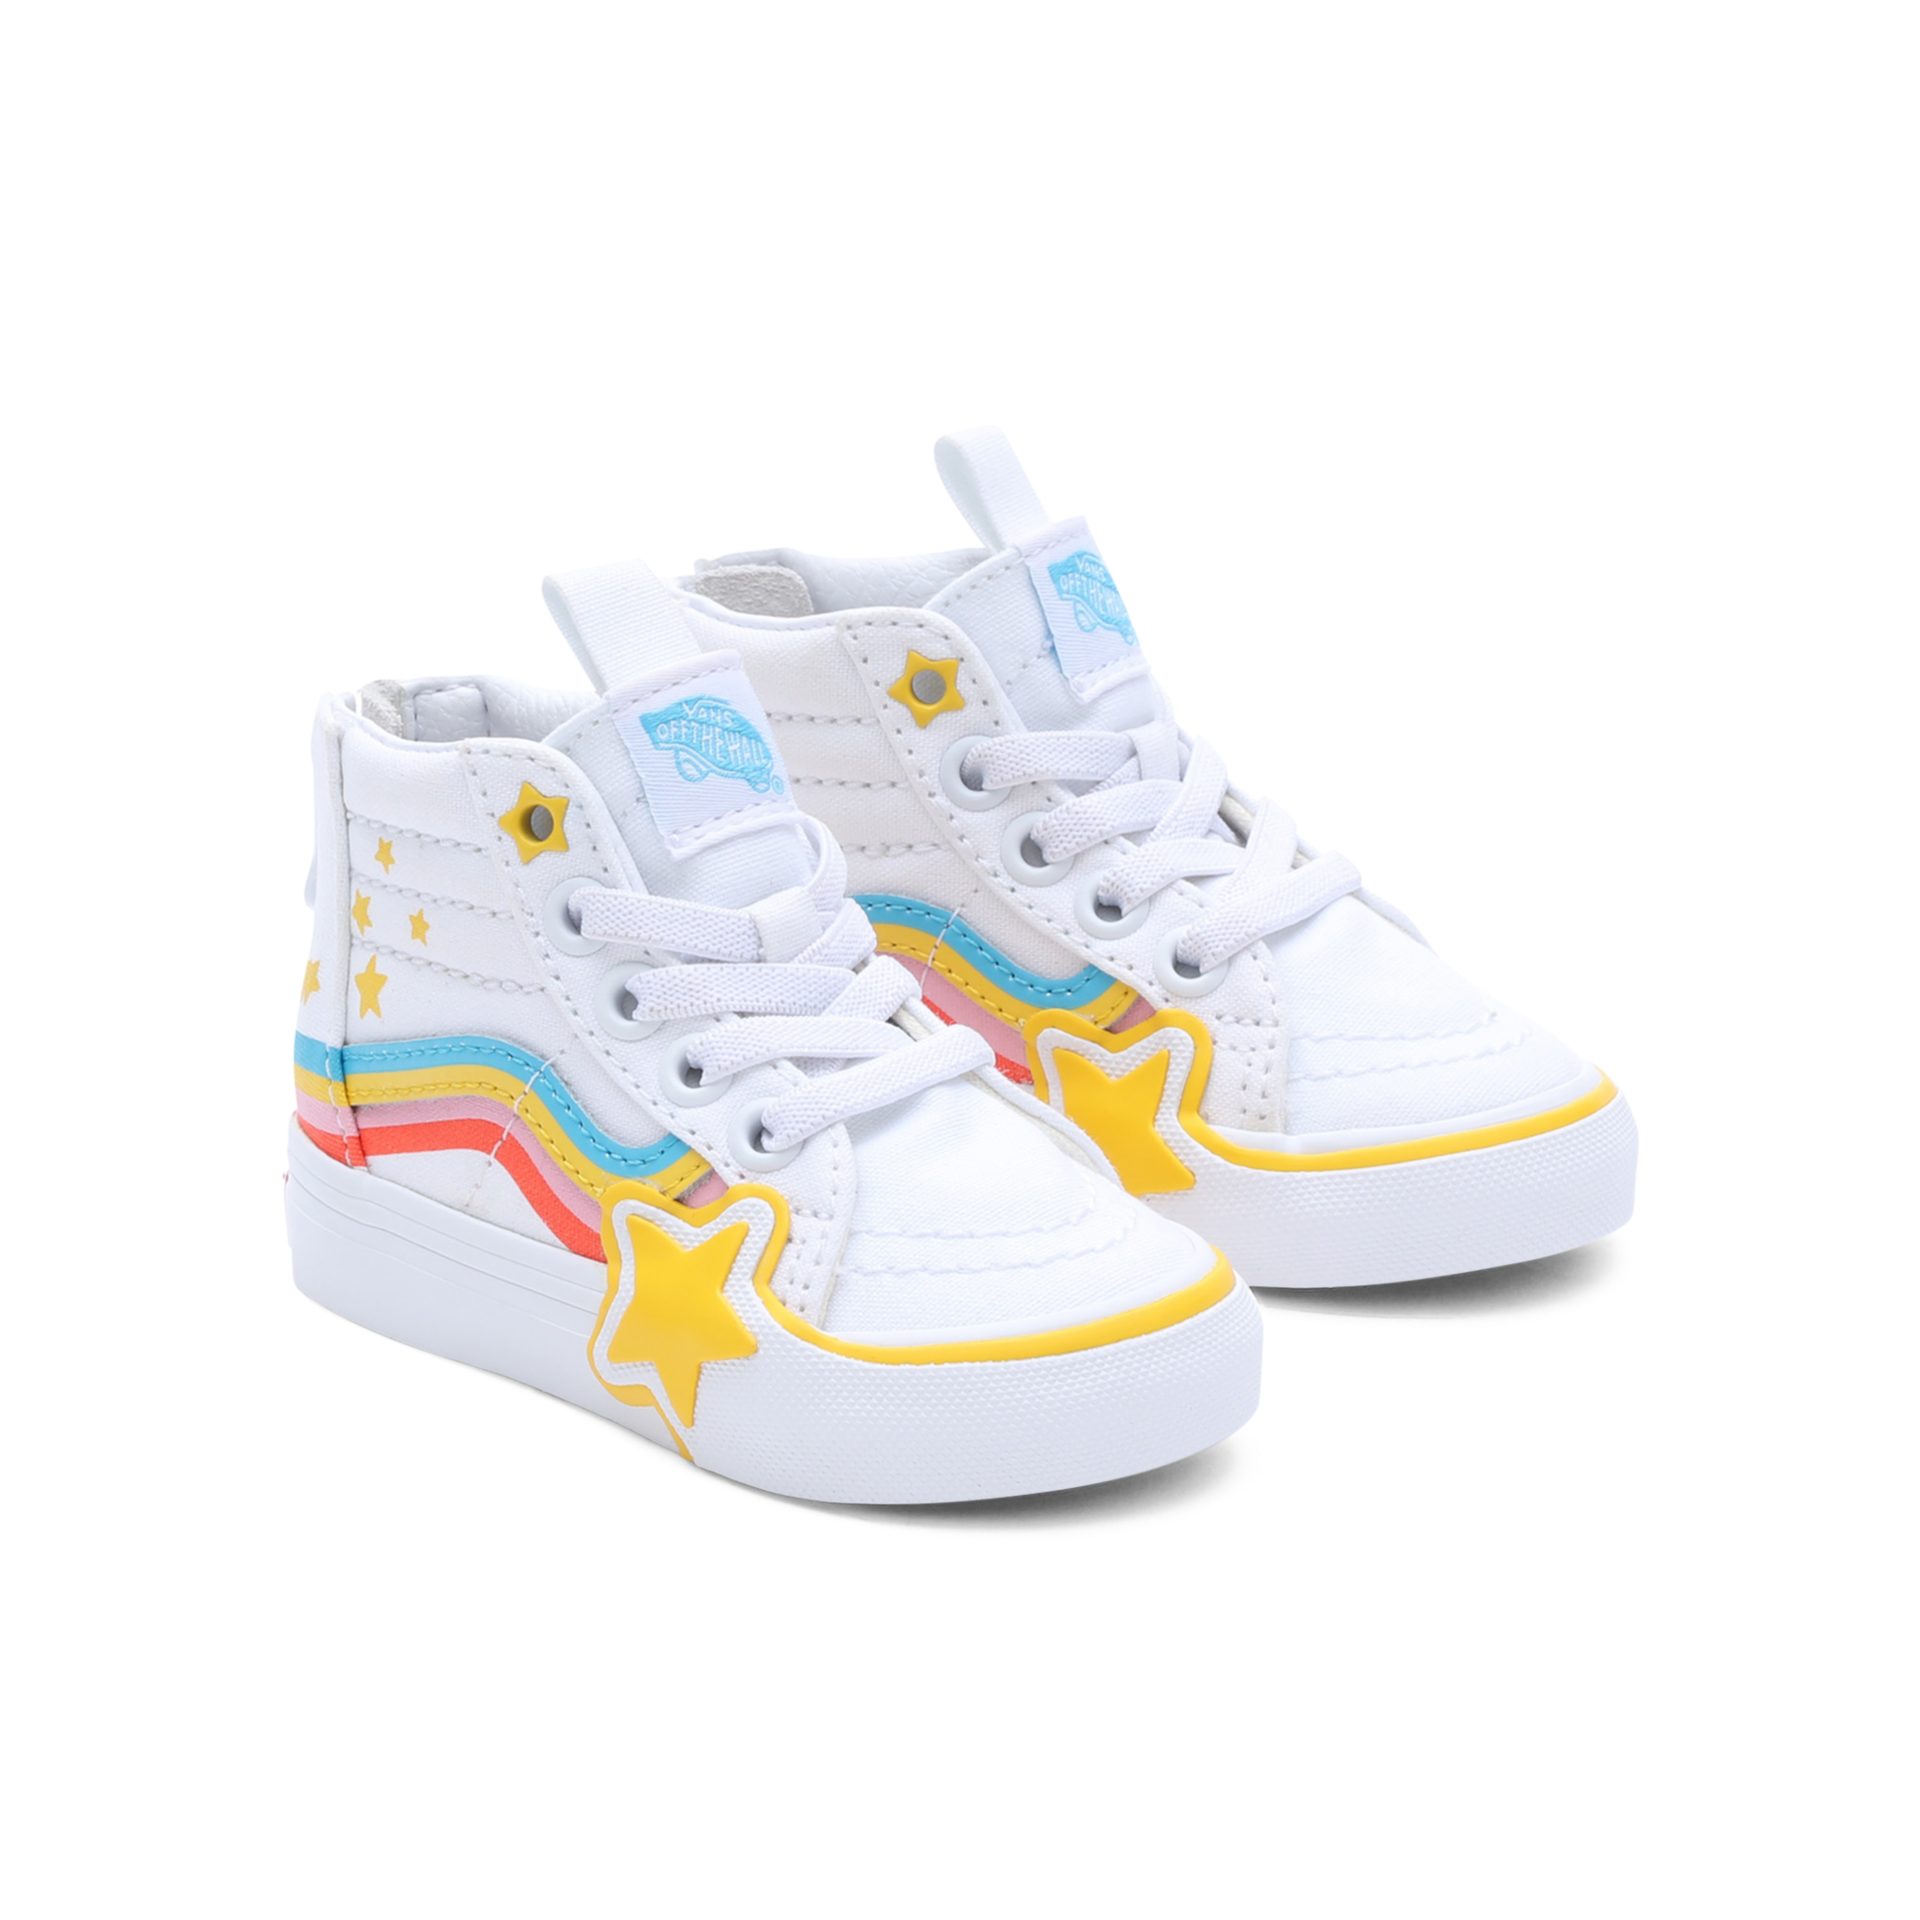 Vans SK8-Hi Zip Star Sneaker mit Rainbow Star Design auffälligem Rainbow